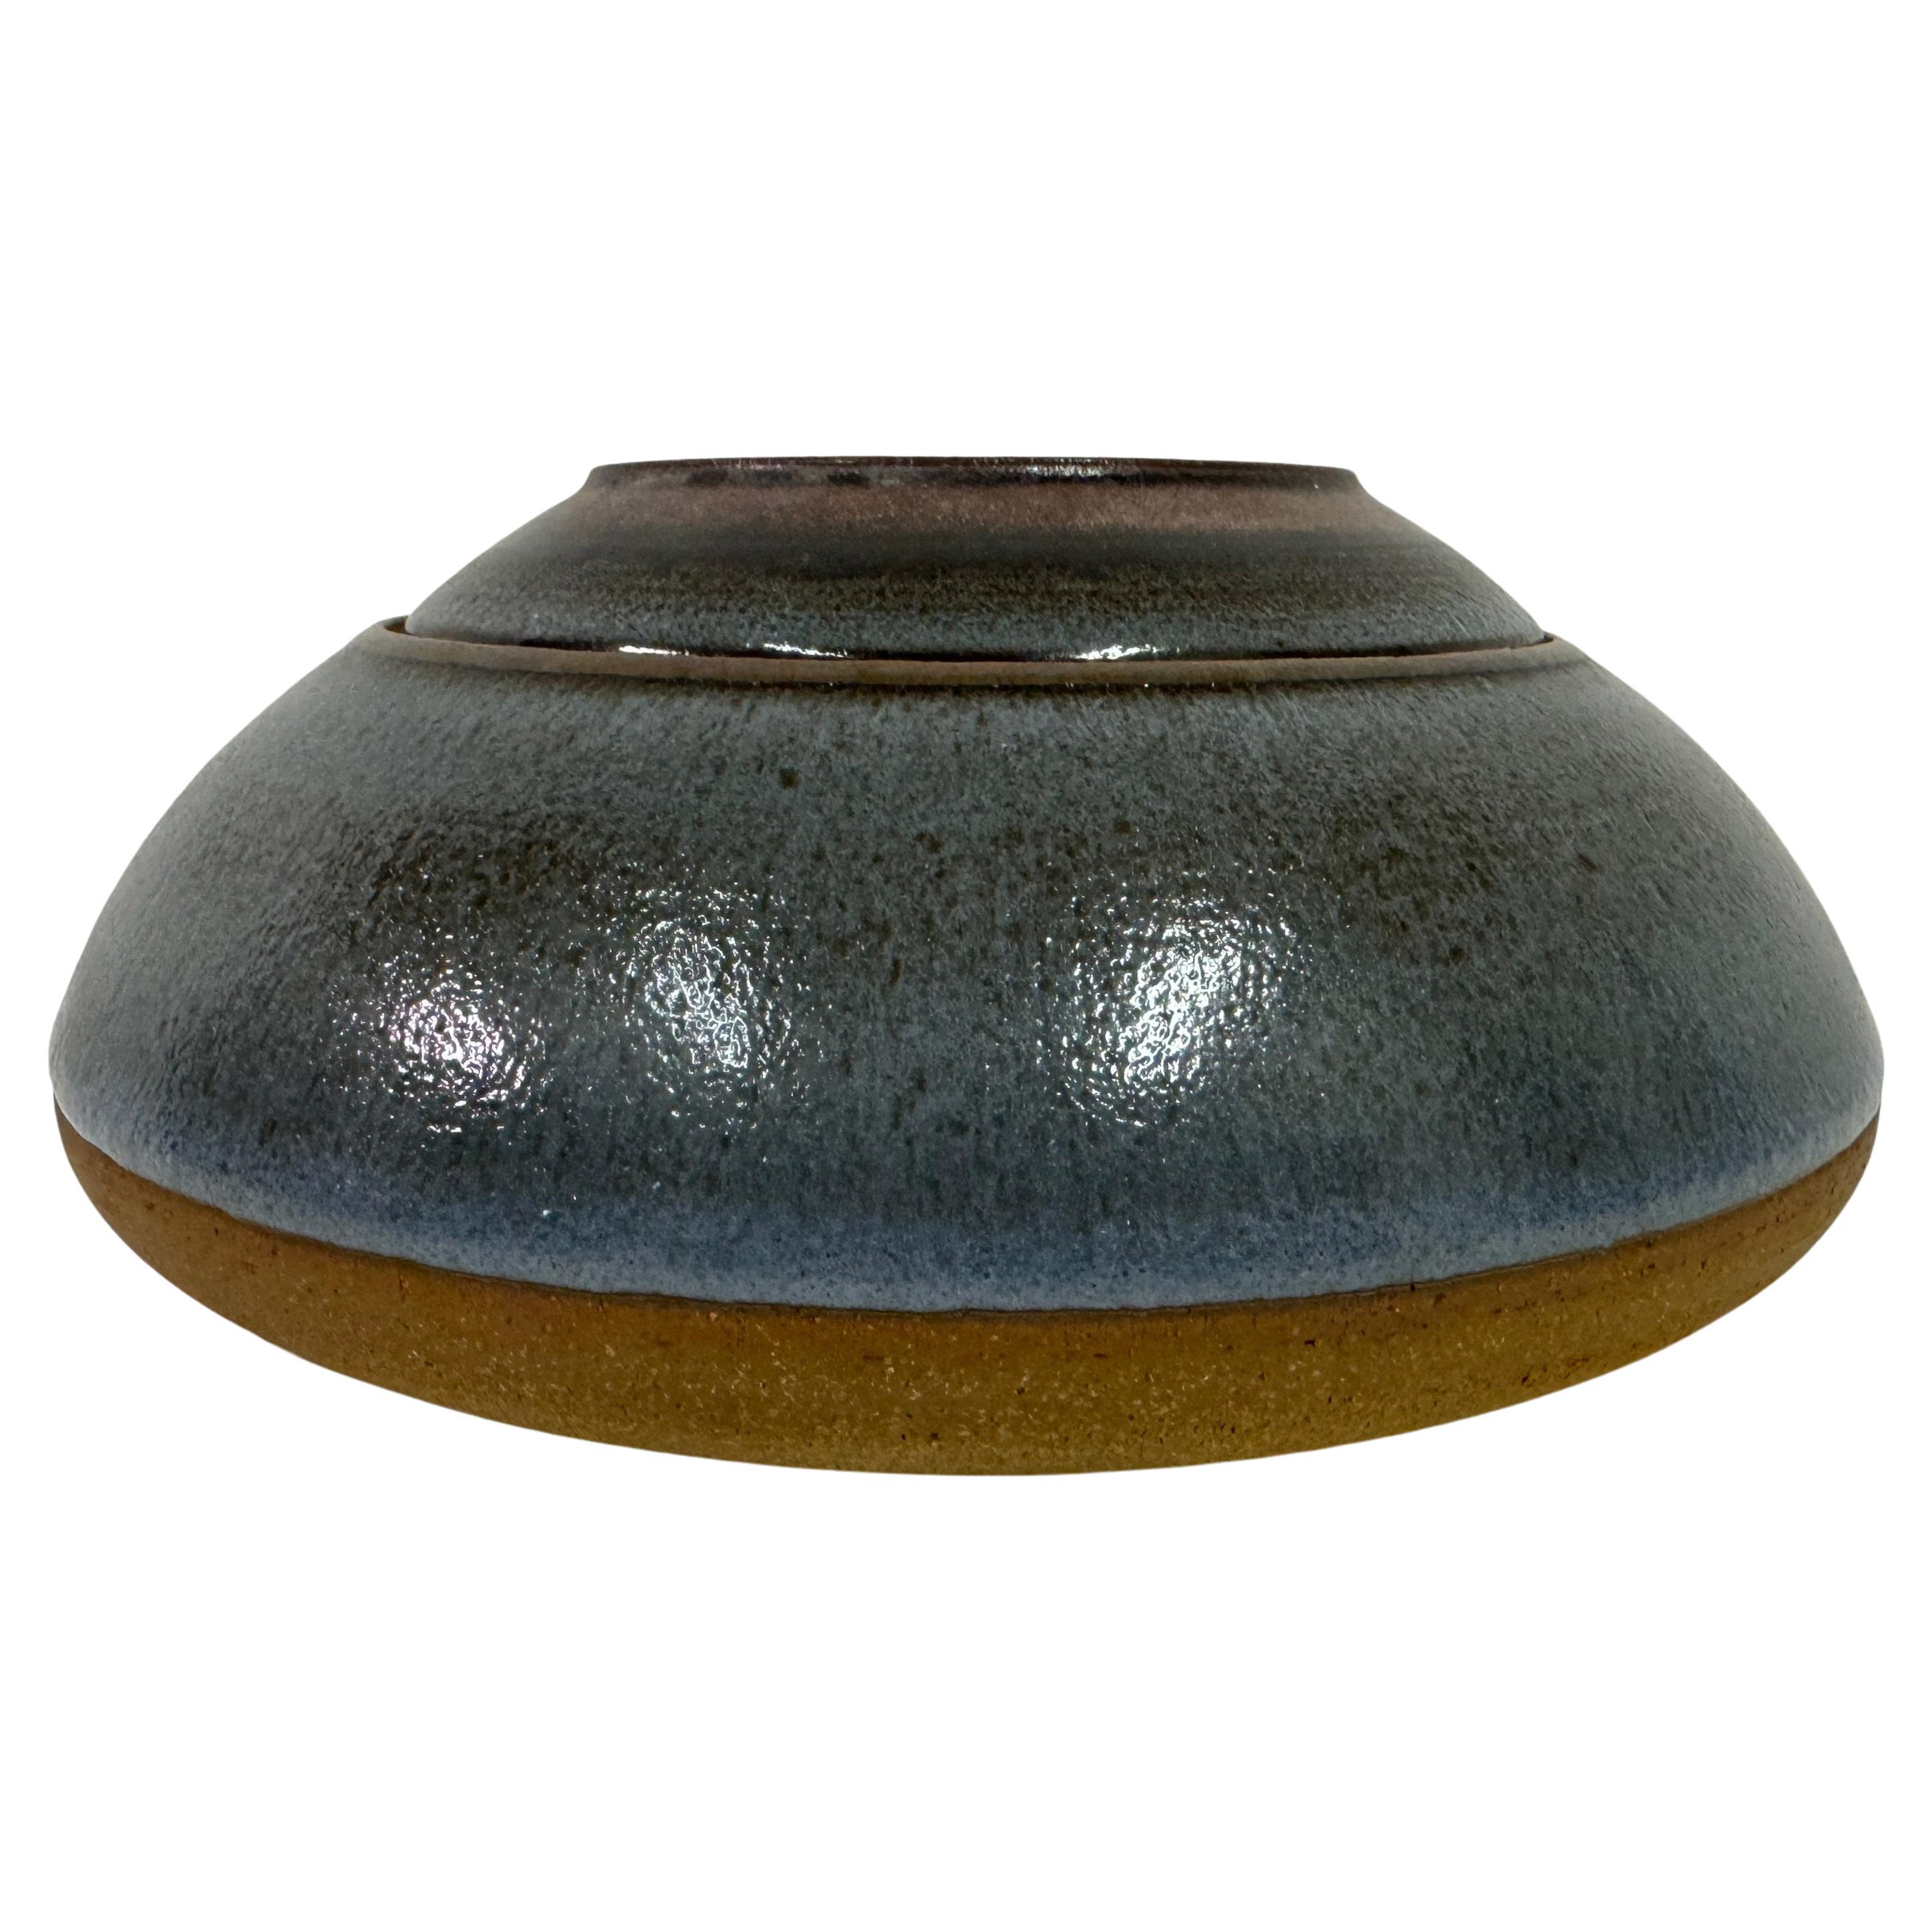 Pot et plat en céramique des années 1960 de Nanni Valentini pour Ceramica Arcore